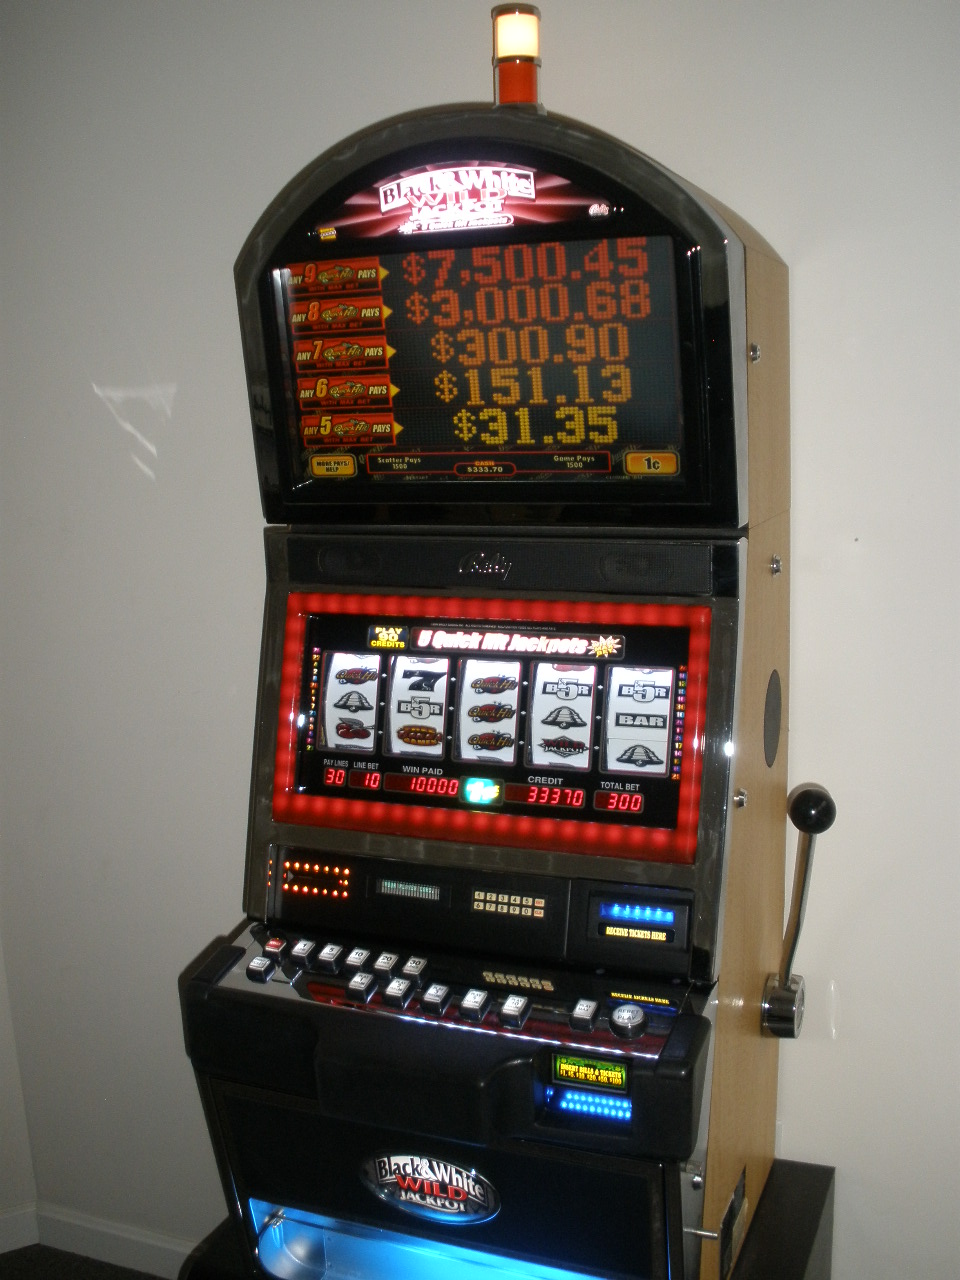 Bally Casino Slot Machines